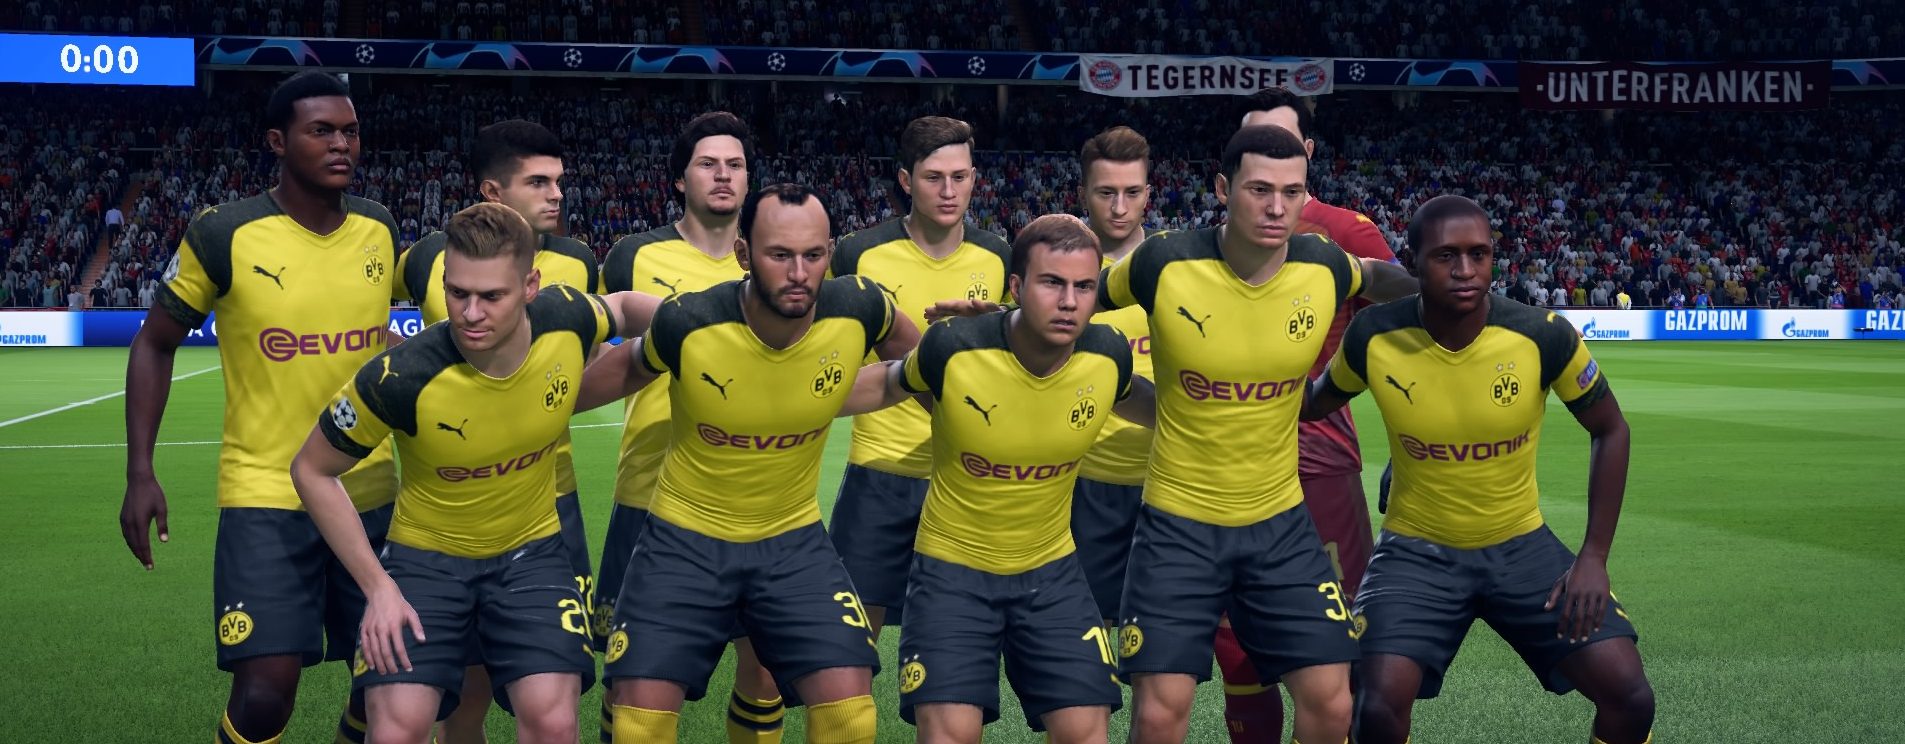 FIFA 19 TOTW 32 – Das Team der Woche 32 in Ultimate Team – mit Reus